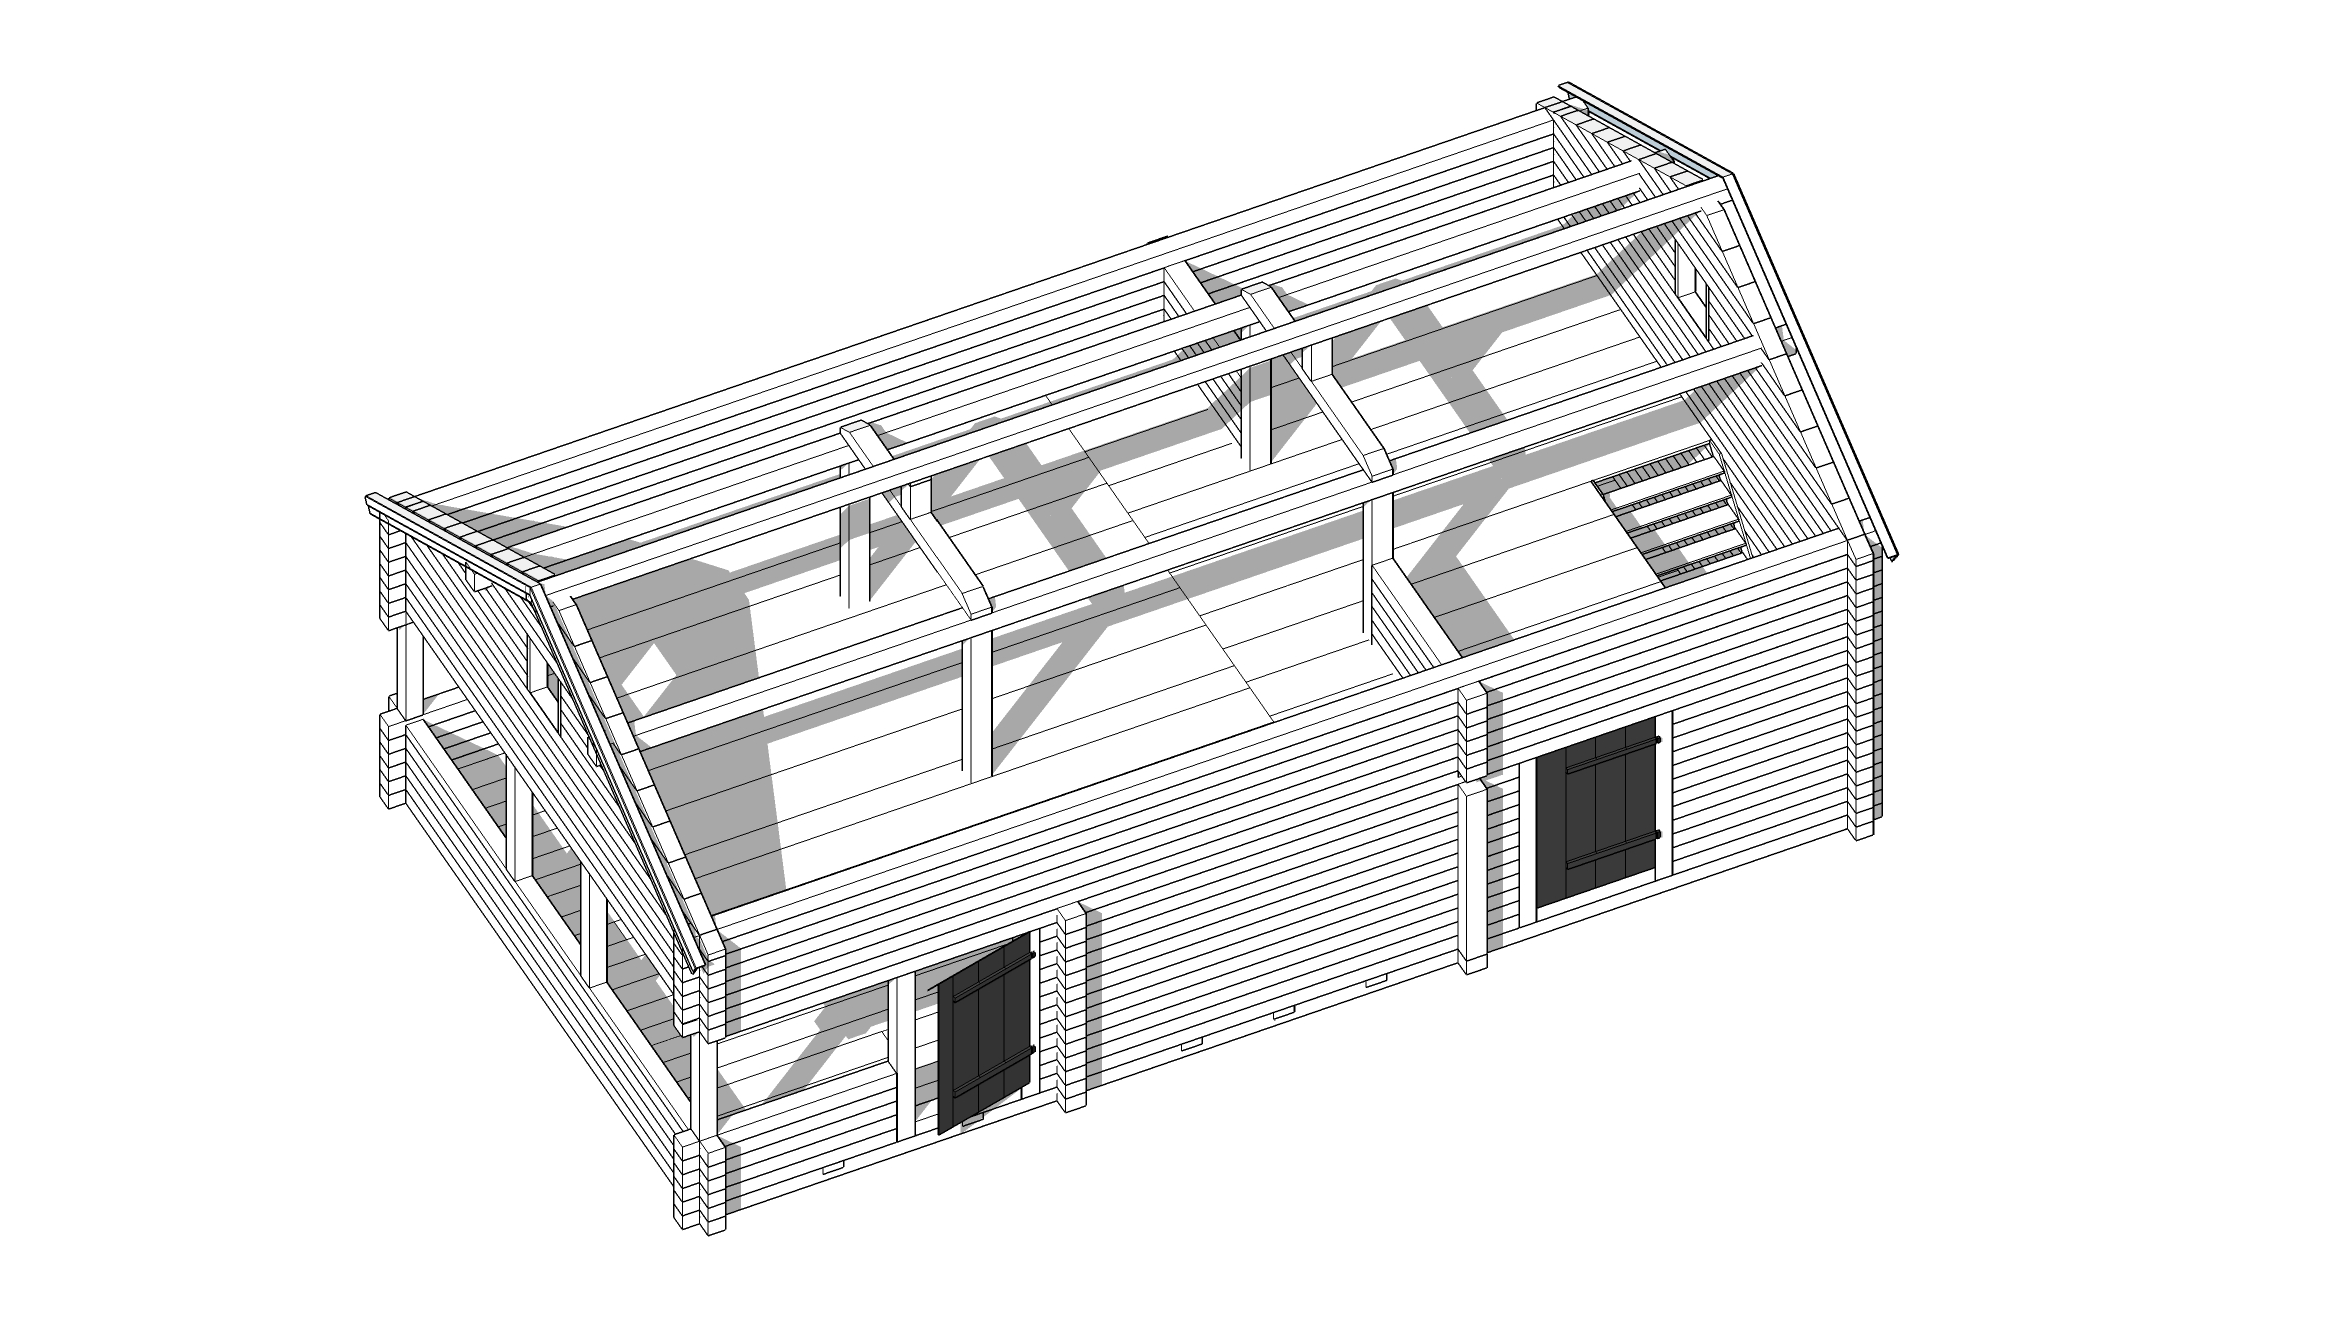 ÅTGÄRDER ÖVRE PLAN MOMENT 3.4 Isolera under tak samt sätta ny undertakspanel MOMENT 5.4 Staket för loftet mot nedre rummet. MOMENT 2.